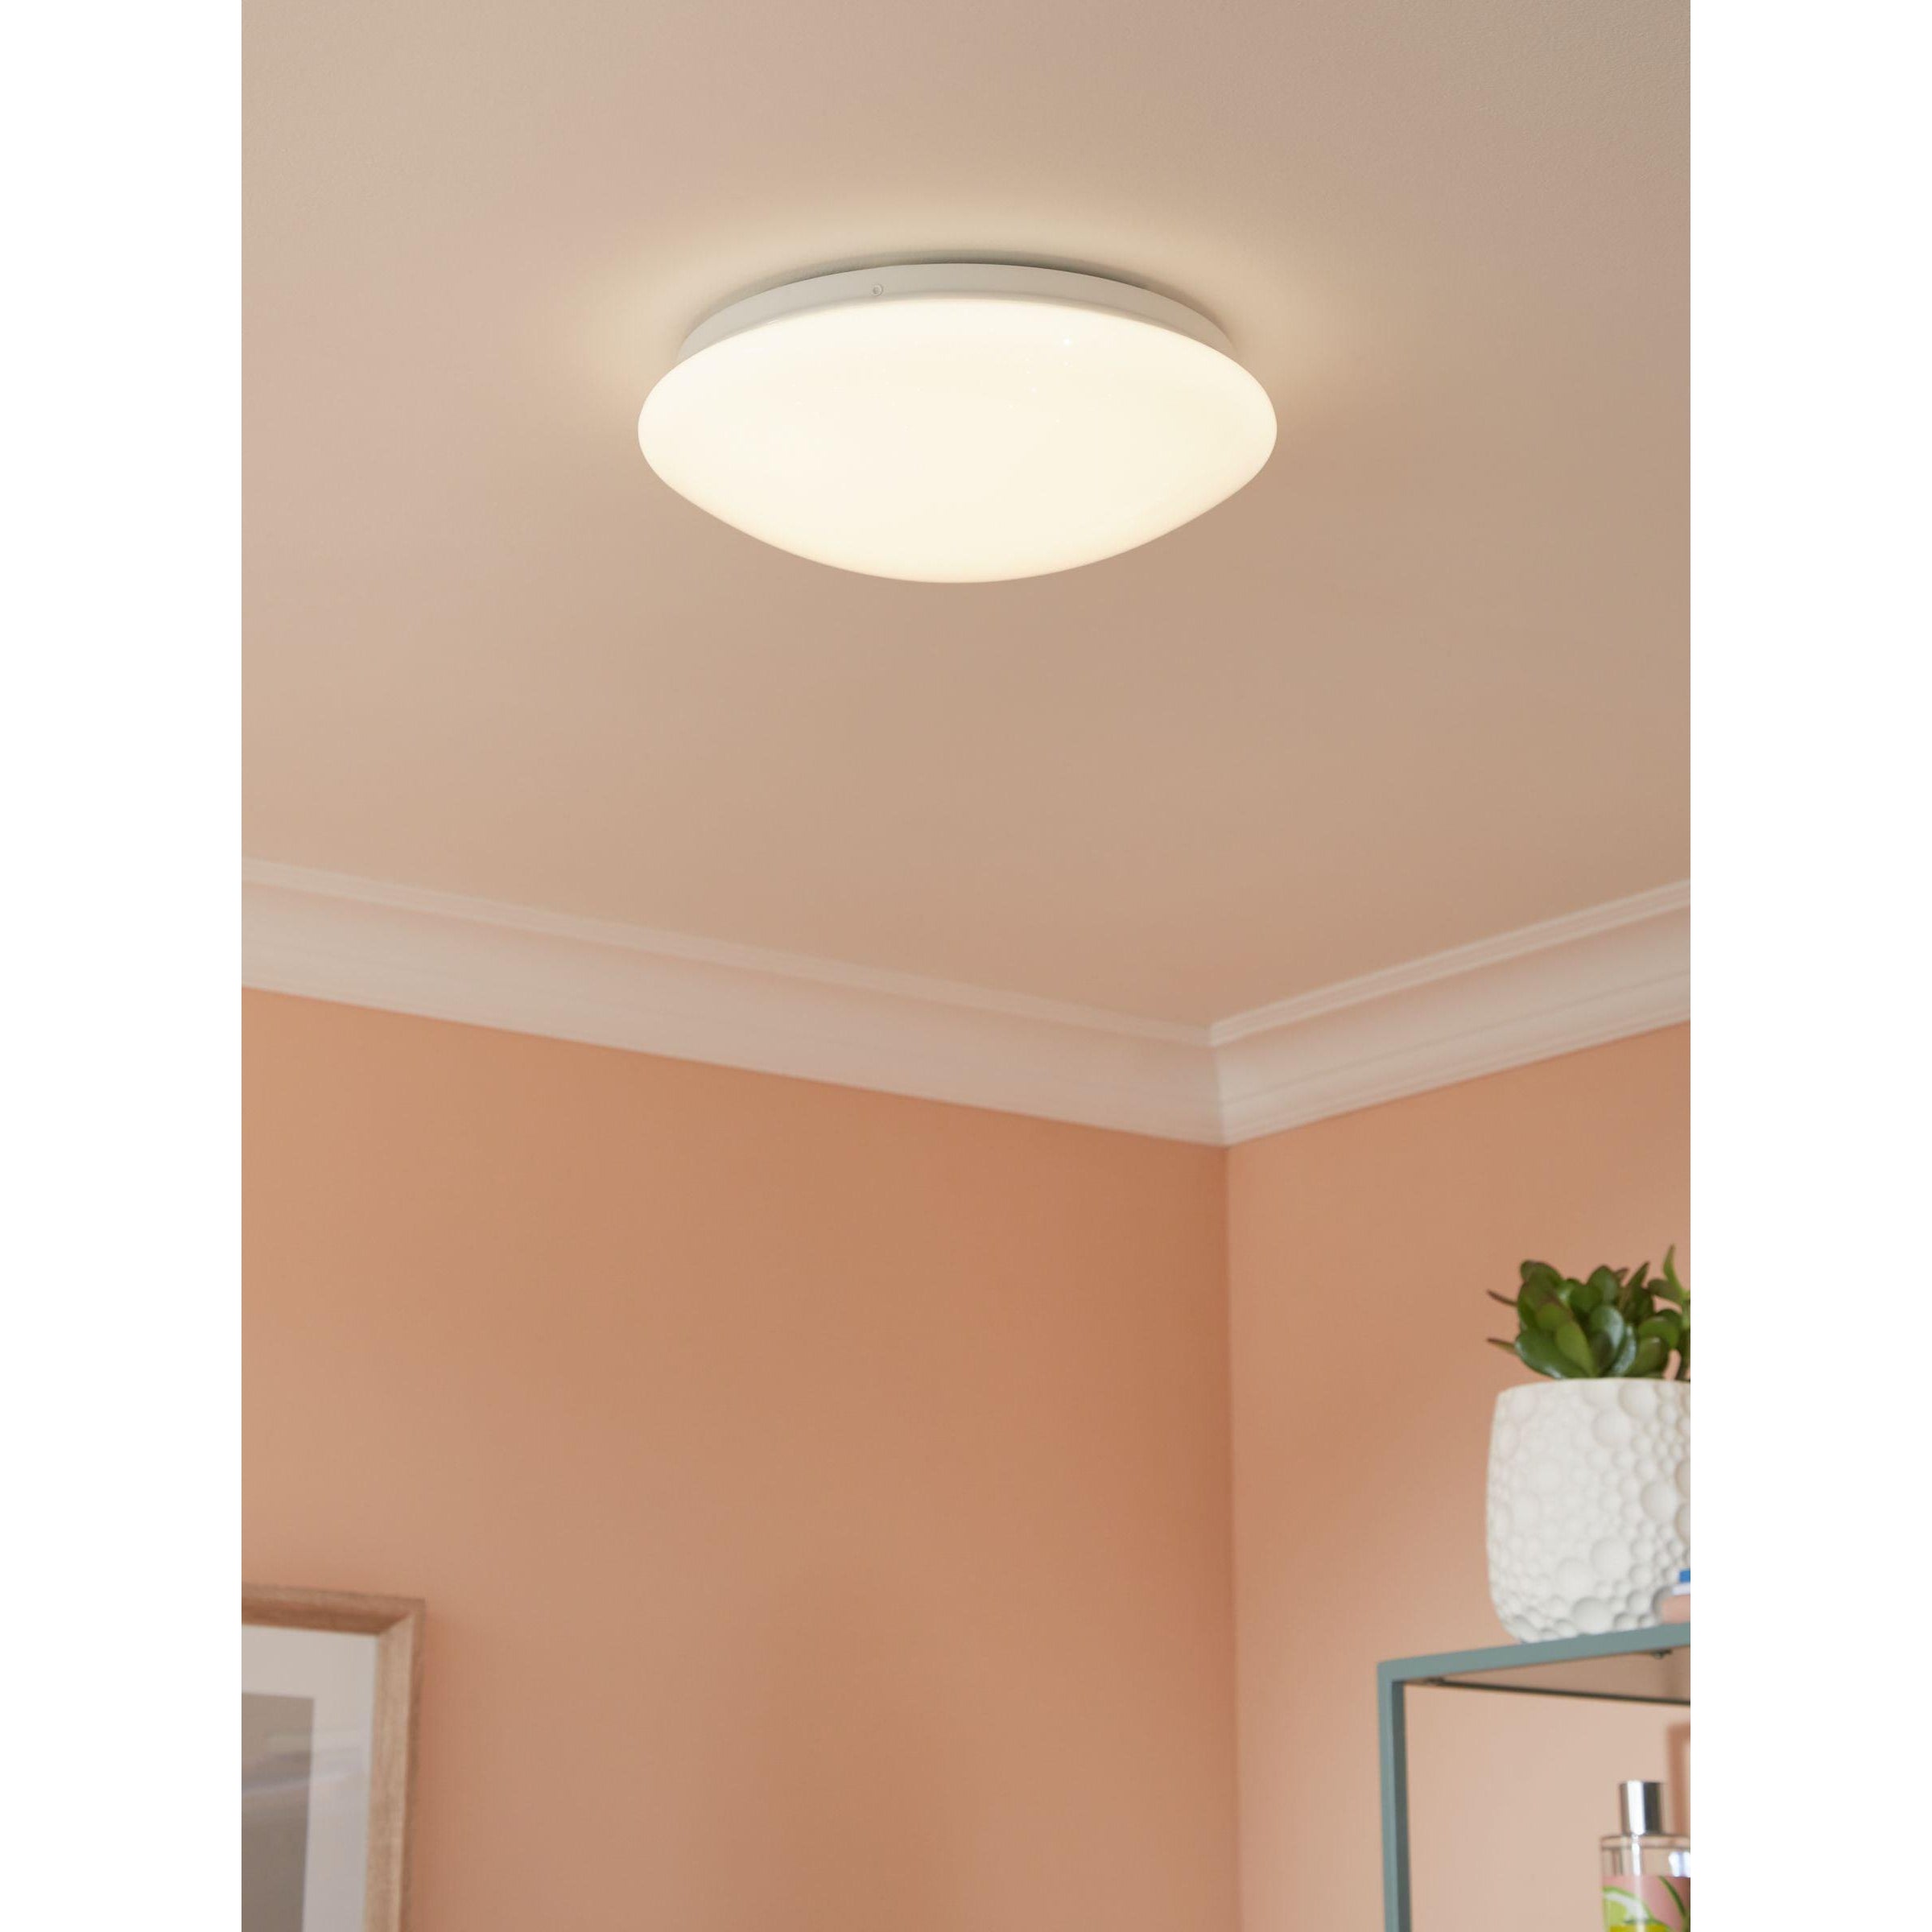 John Lewis & Partners Star Sparkle LED Flush Ceiling Light - White